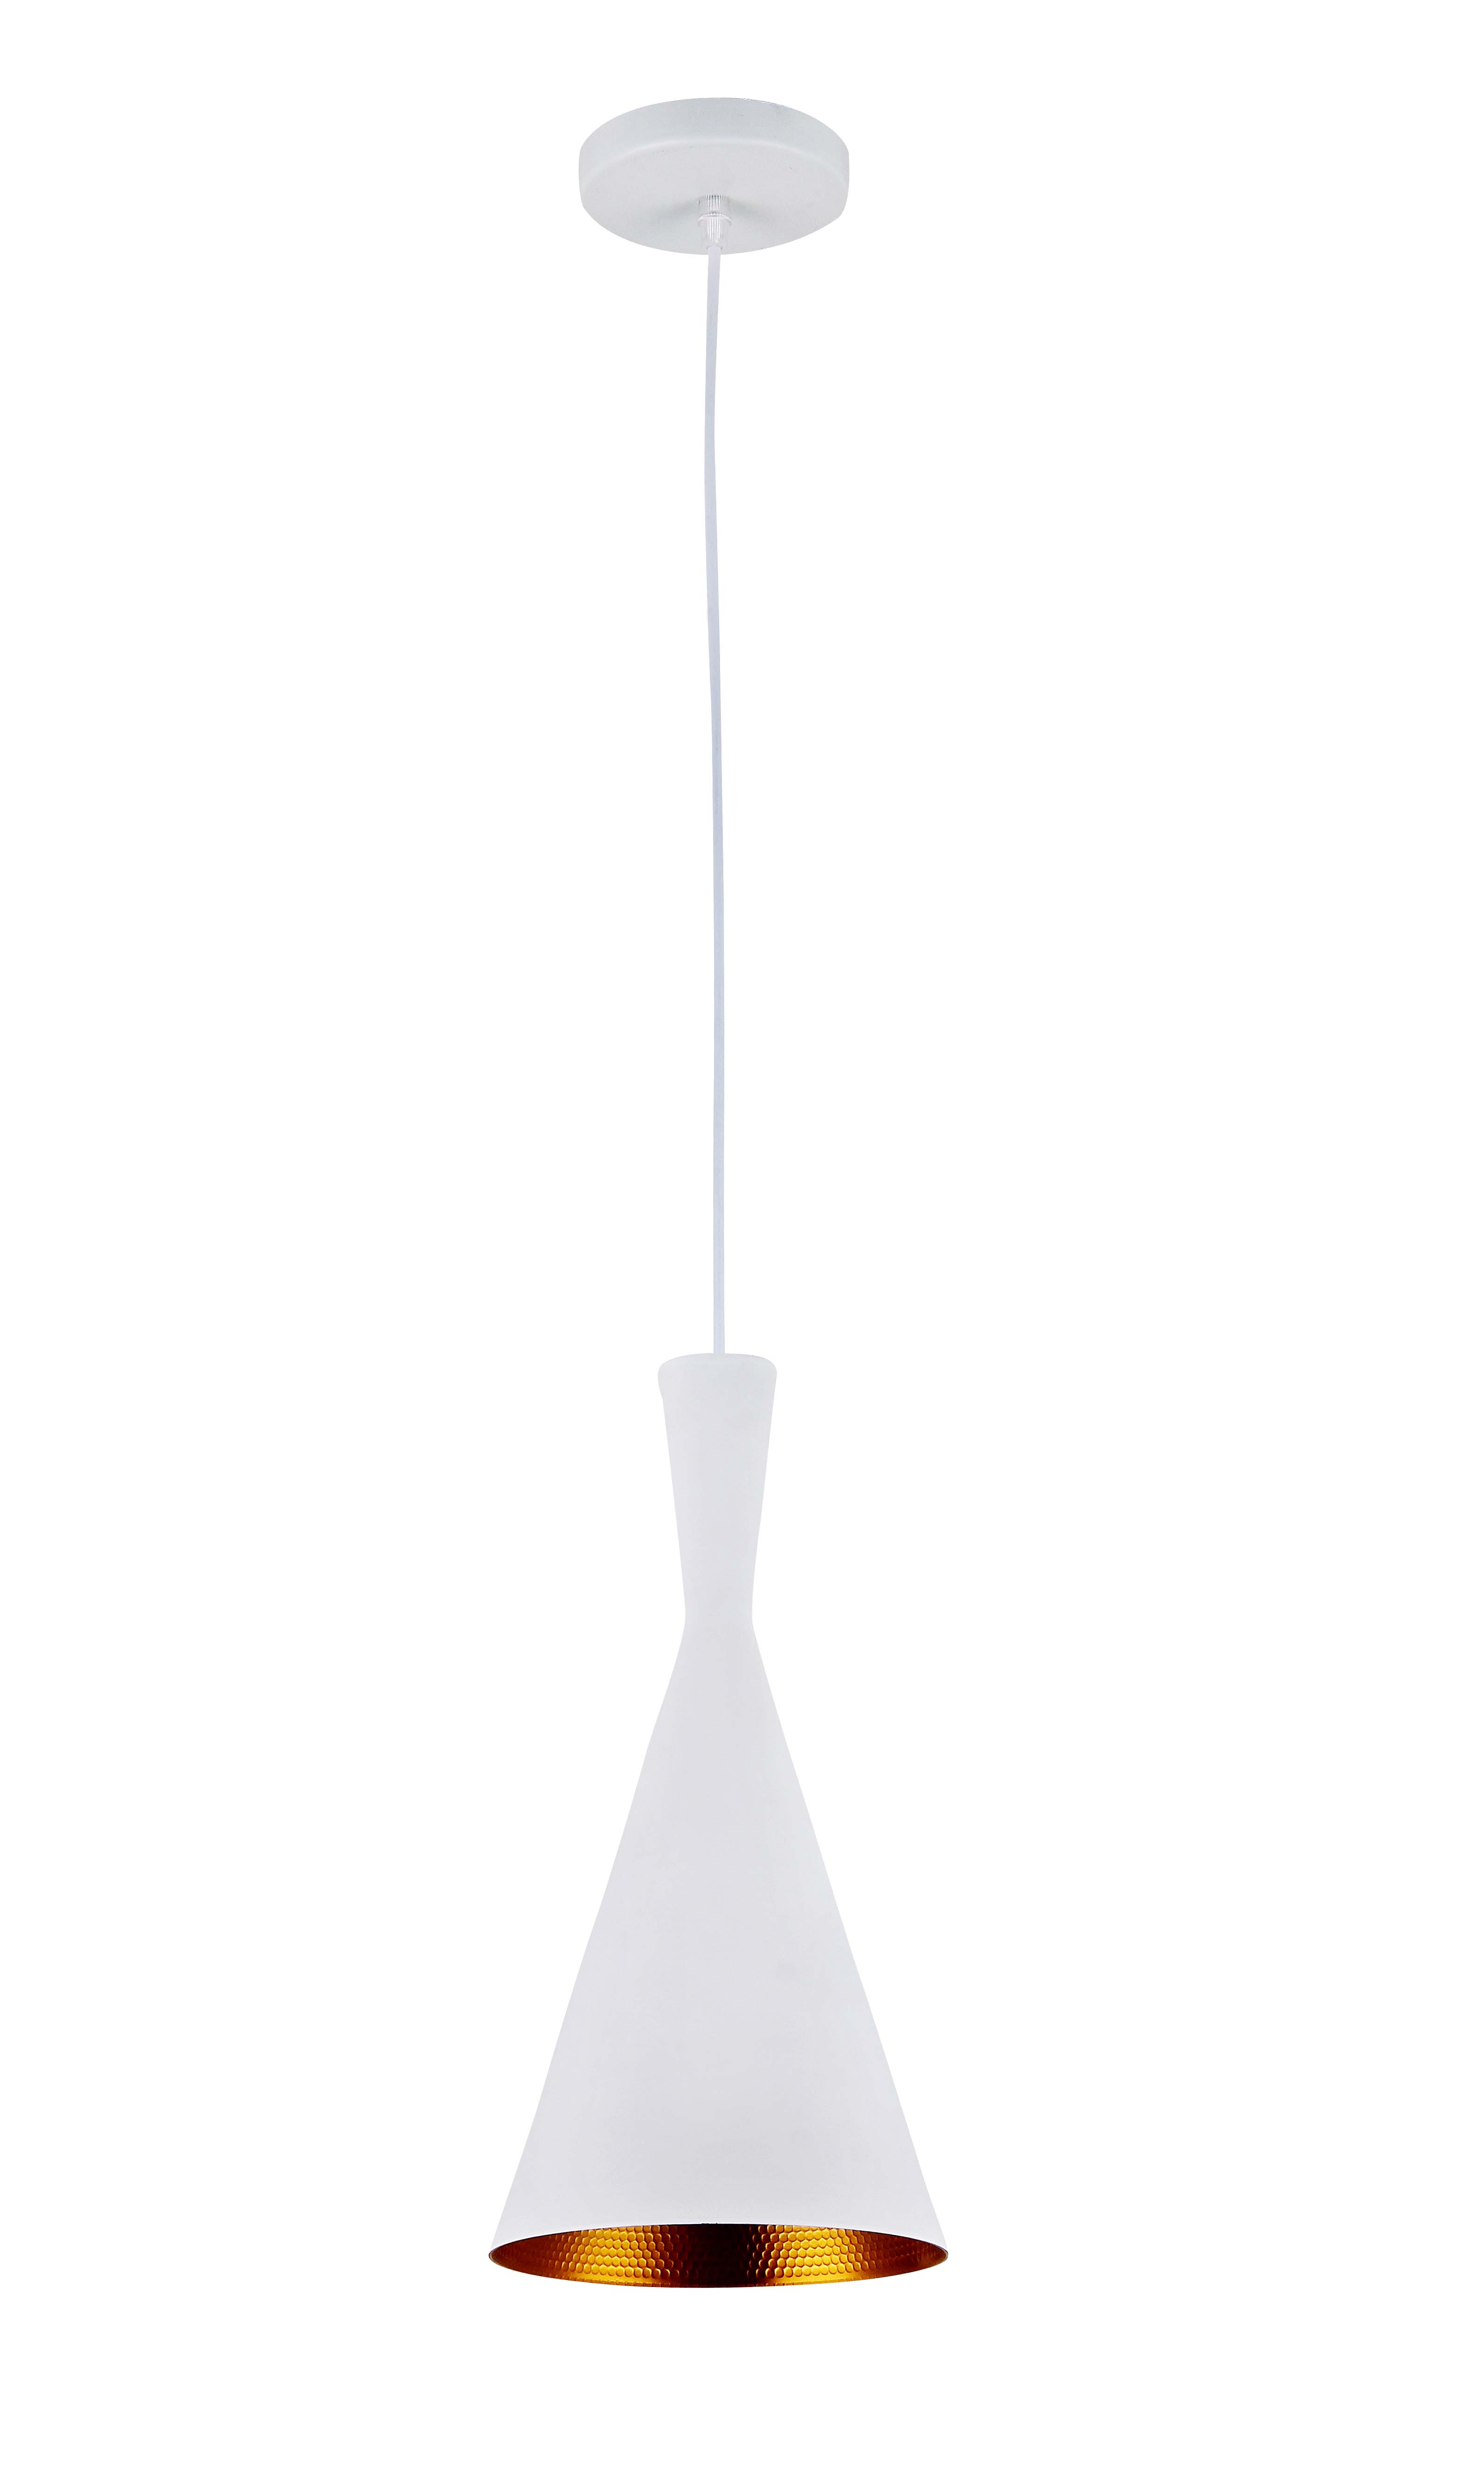 P1095WH E27 pendant light Vintage Aluminum design White Modern hanging lamp